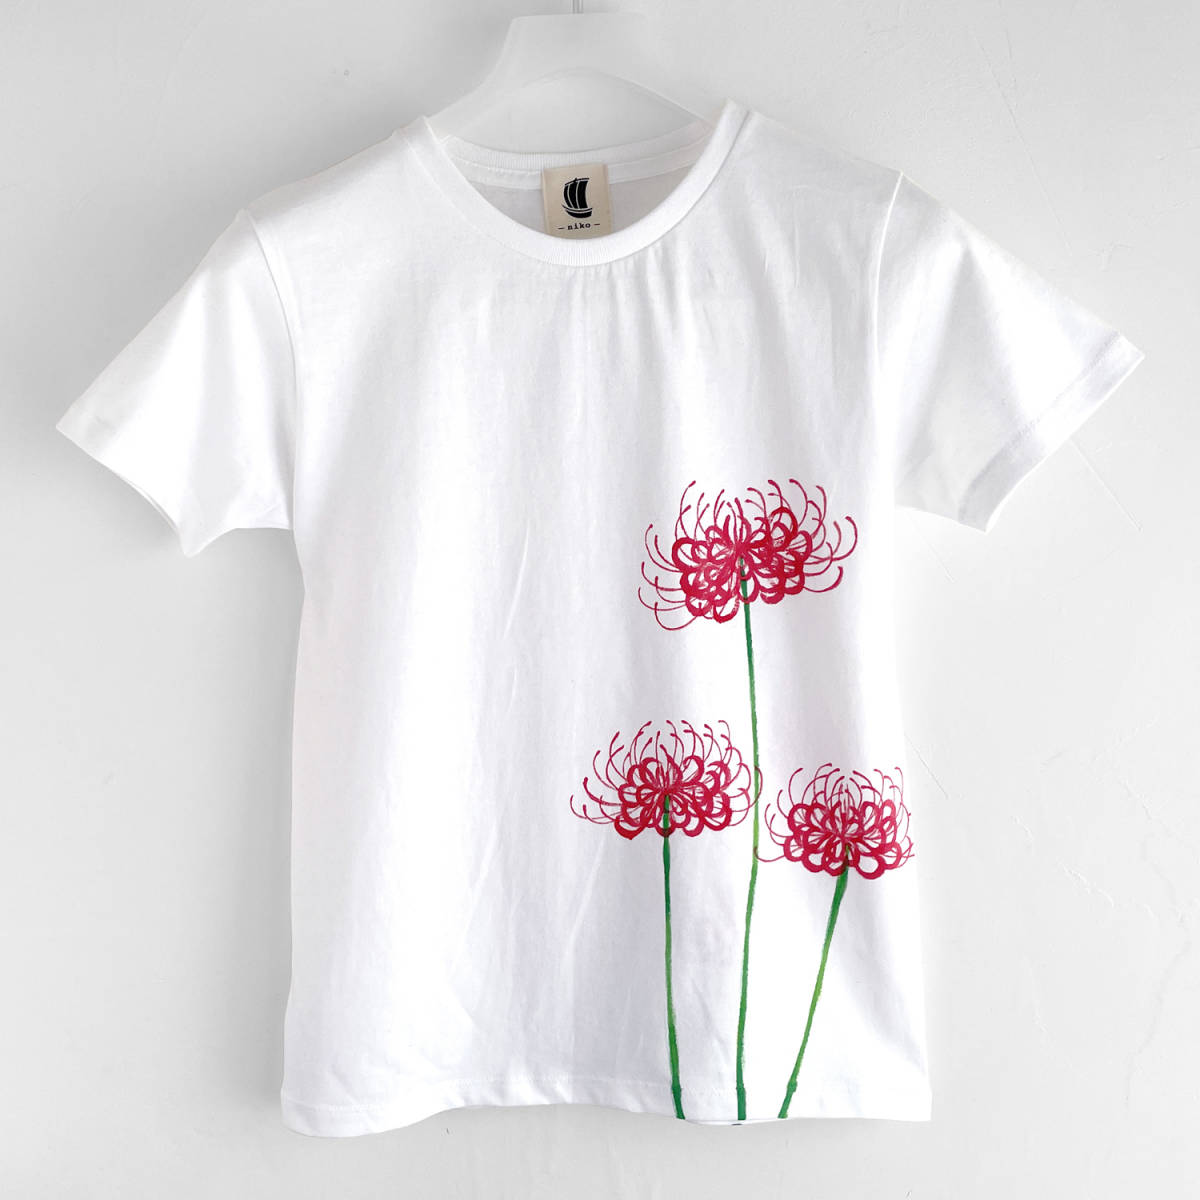 レディース Tシャツ Lサイズ 白 彼岸花柄Tシャツハンドメイド 手描きTシャツ 和柄 花柄 秋冬, Lサイズ, 丸首, 柄もの